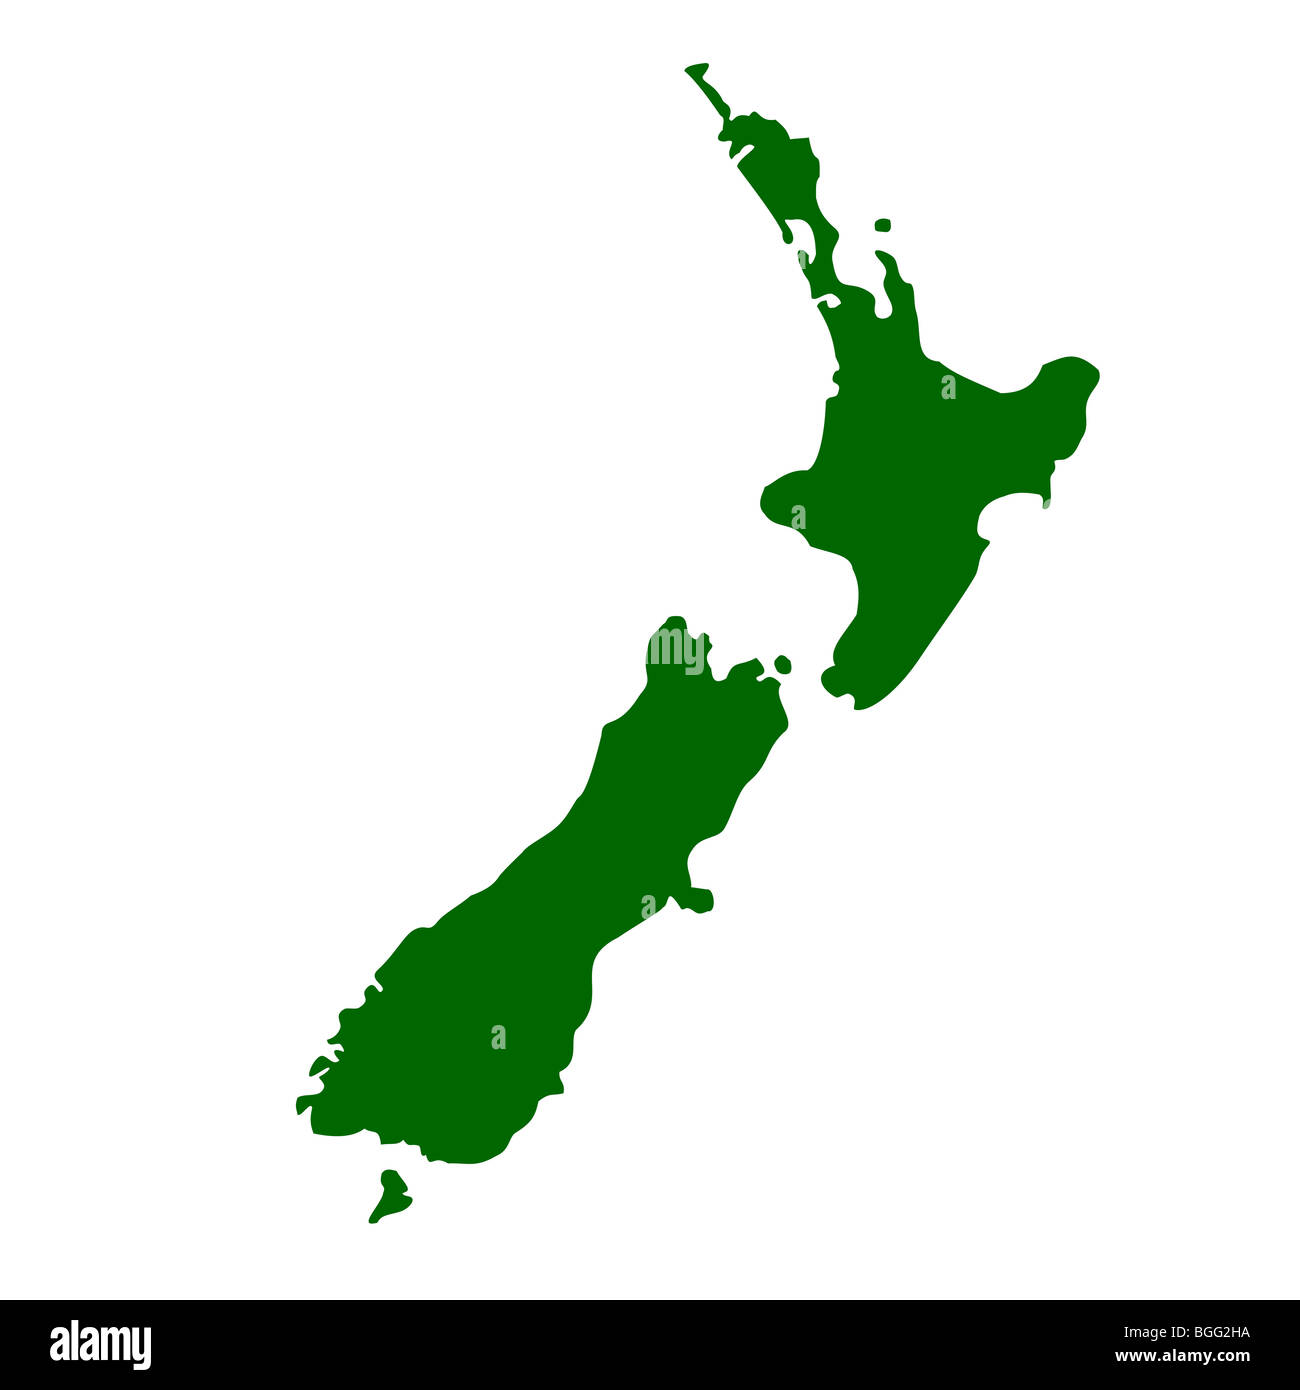 Map of New Zealand, isolated on white background. Stock Photo